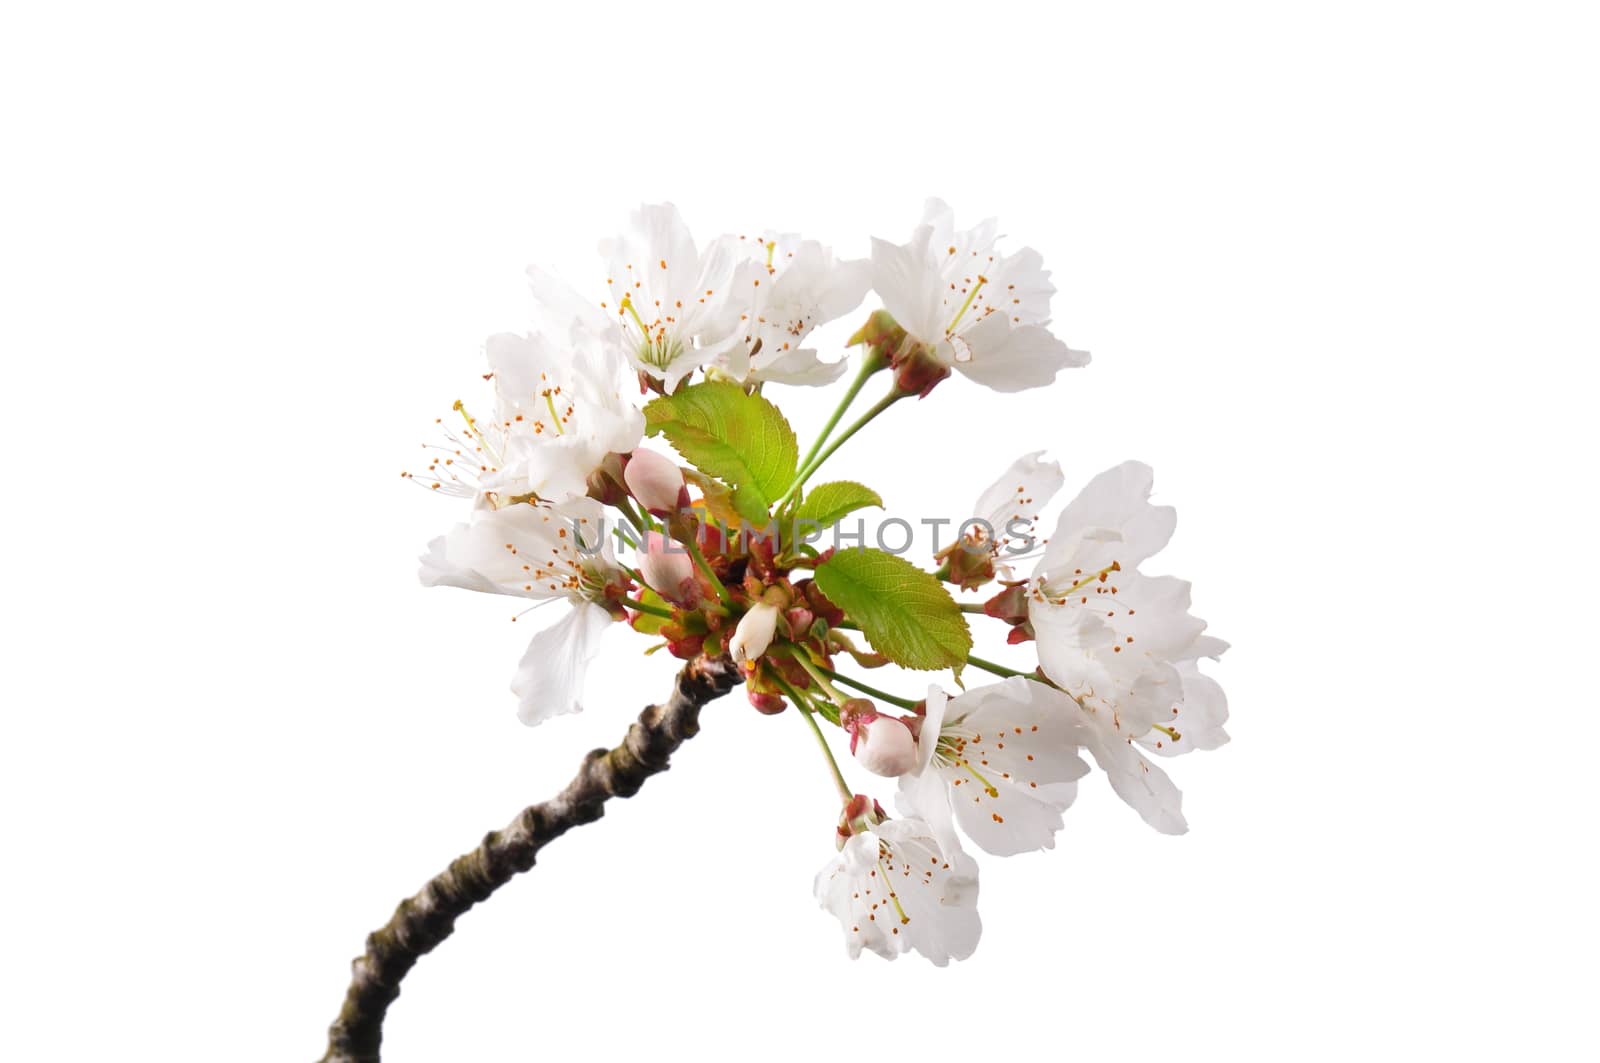 Flowering cherry (Prunus avium) by rbiedermann